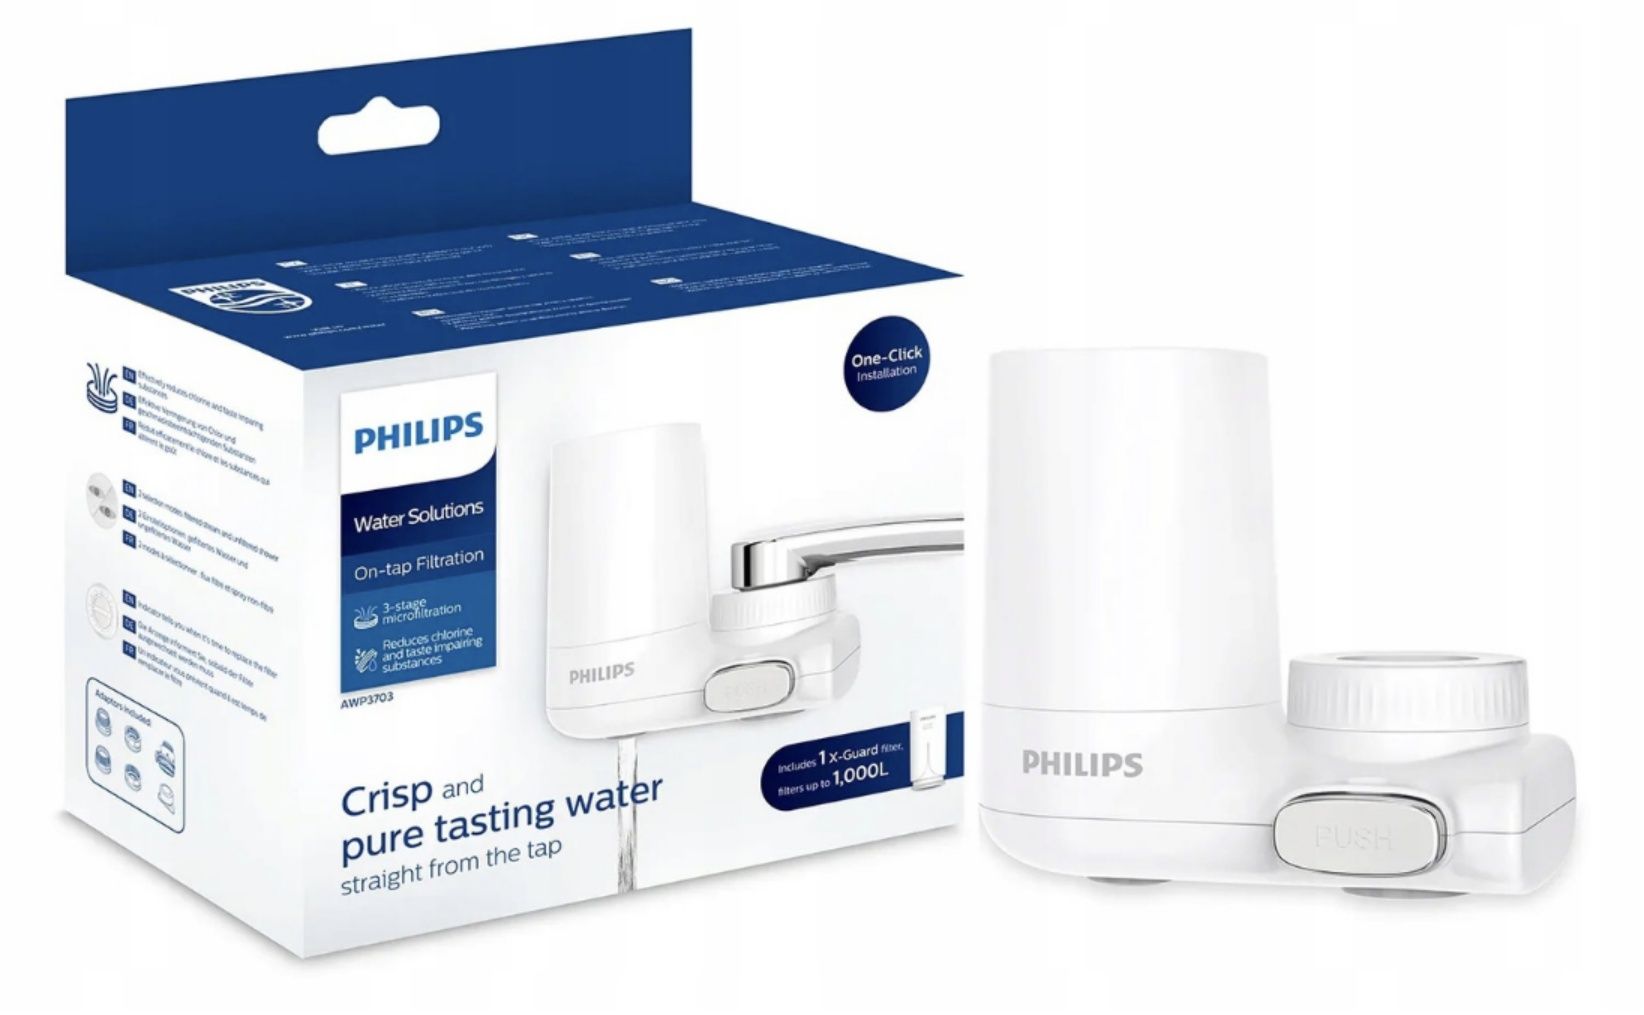 Philips filtr nakranowy nowy z dodatkowym filtrem